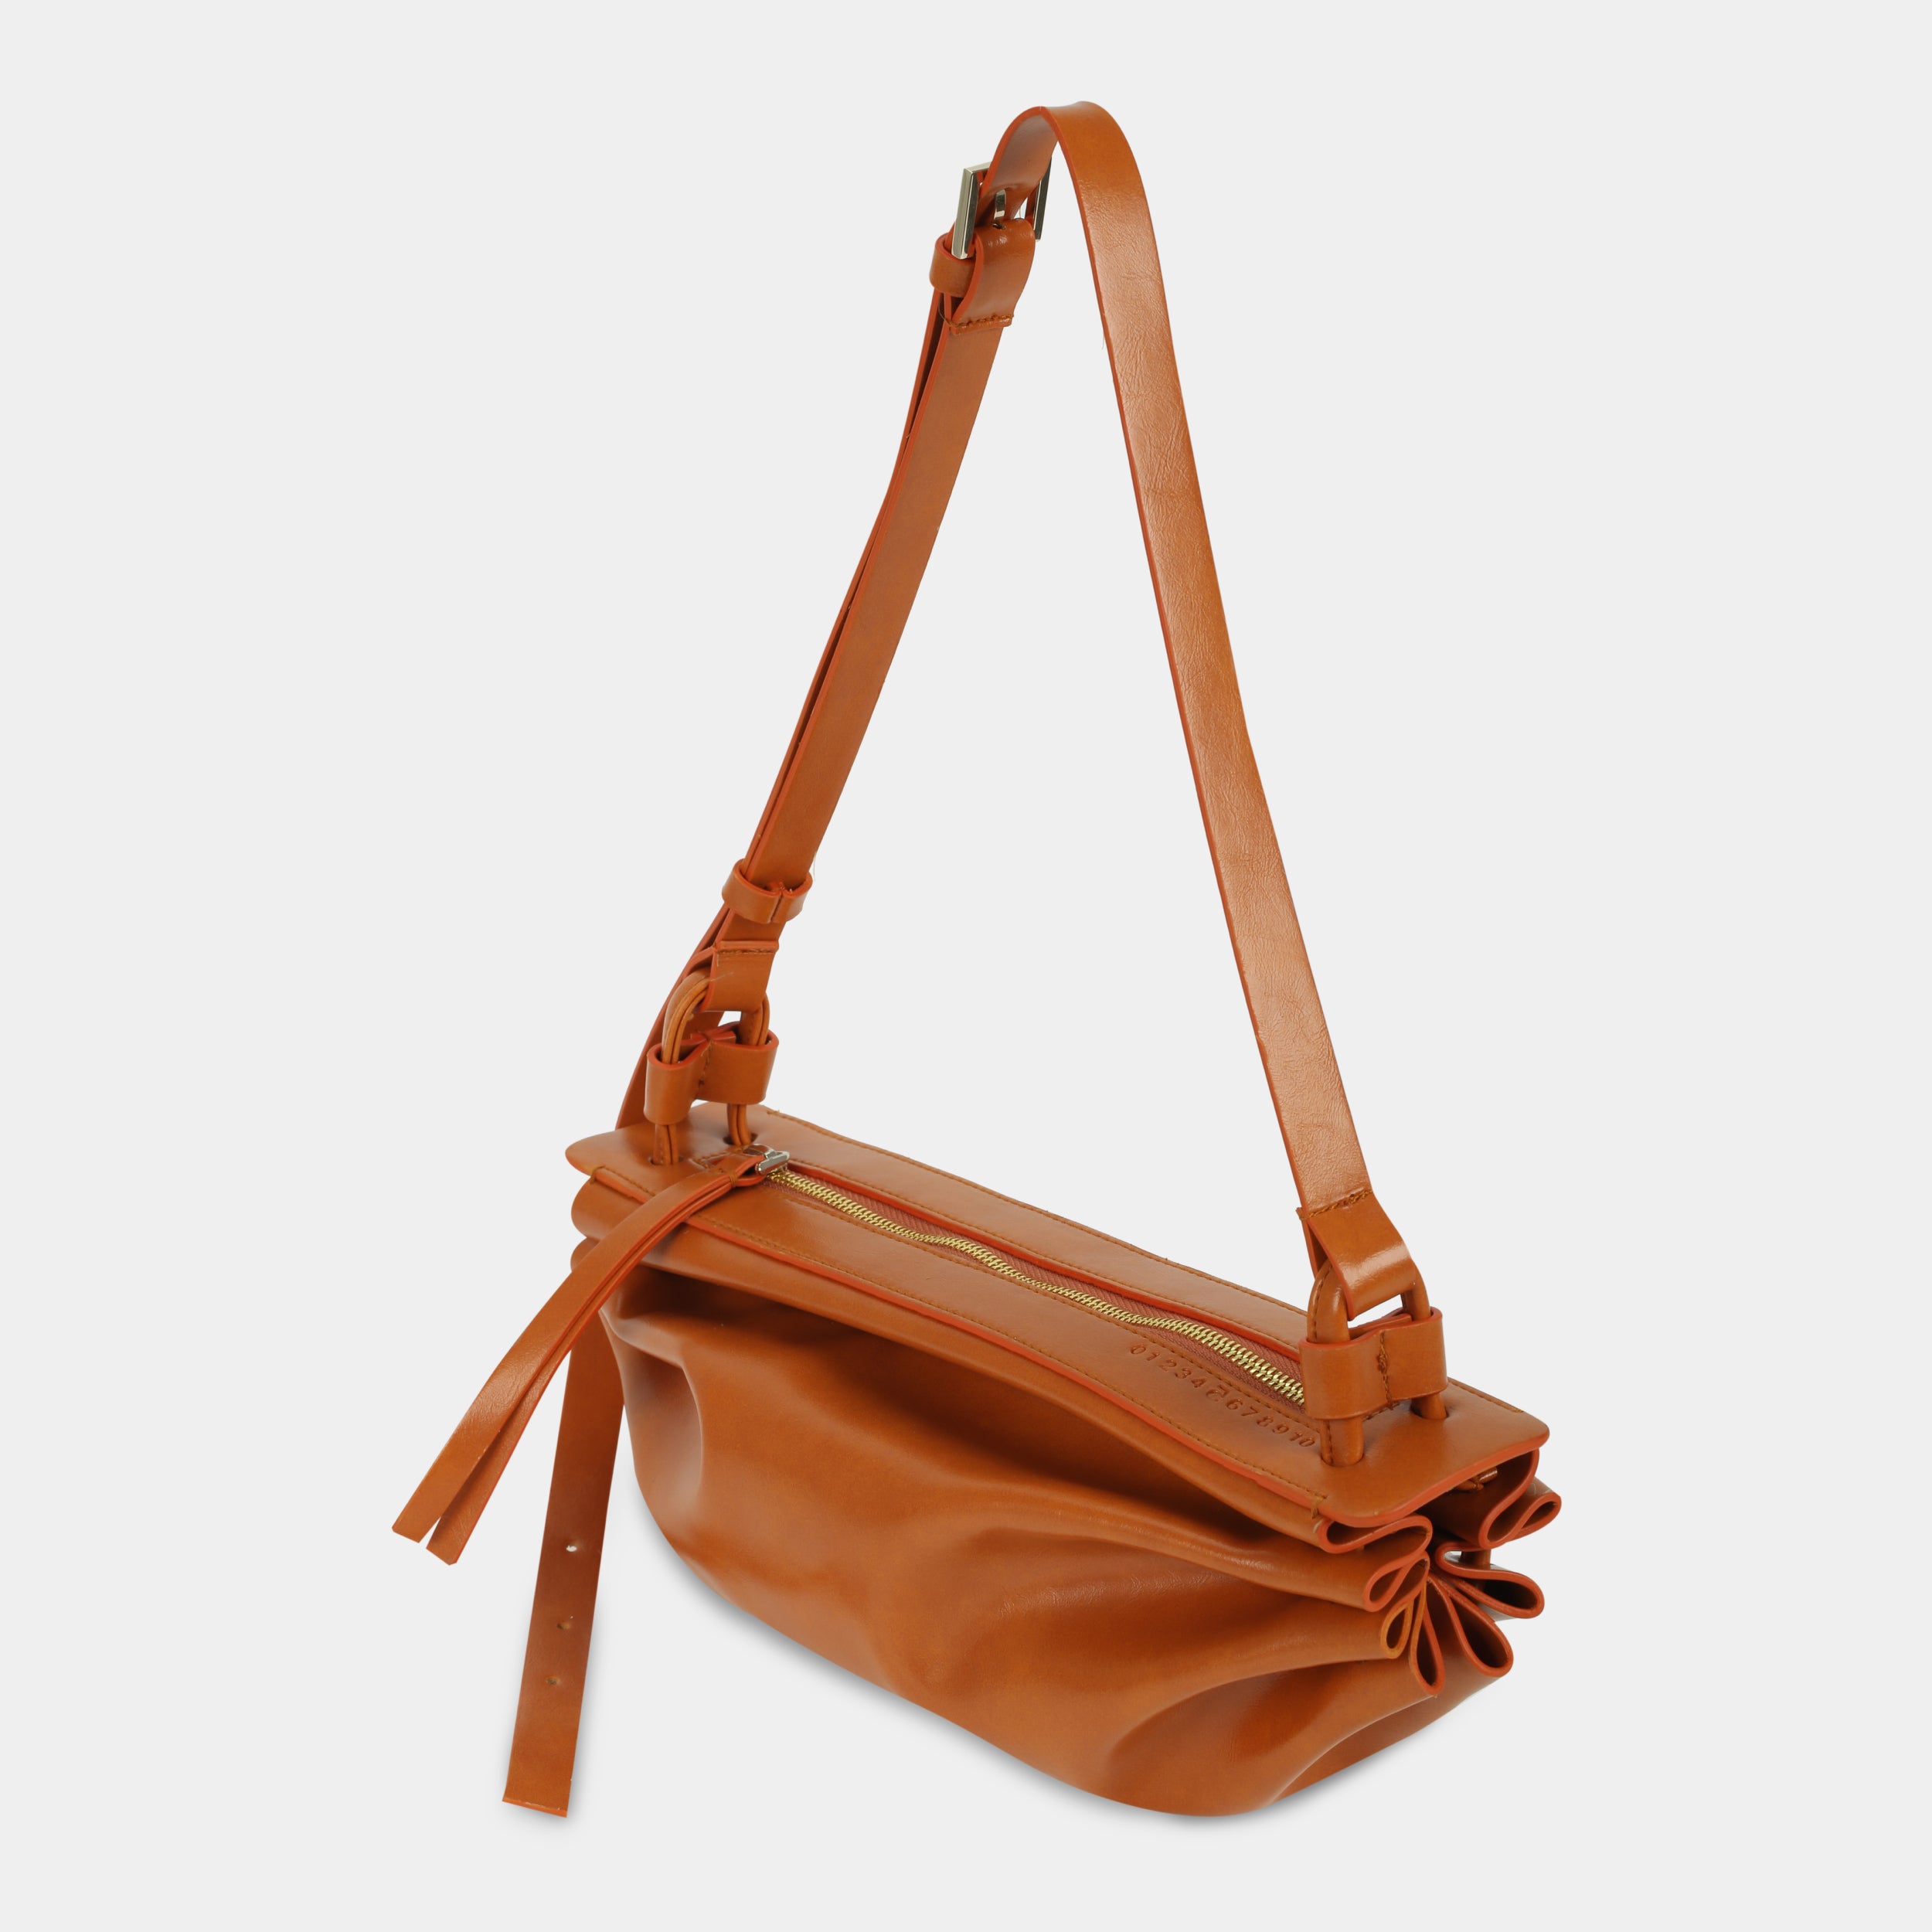 BOAT bag large size (M) orange color